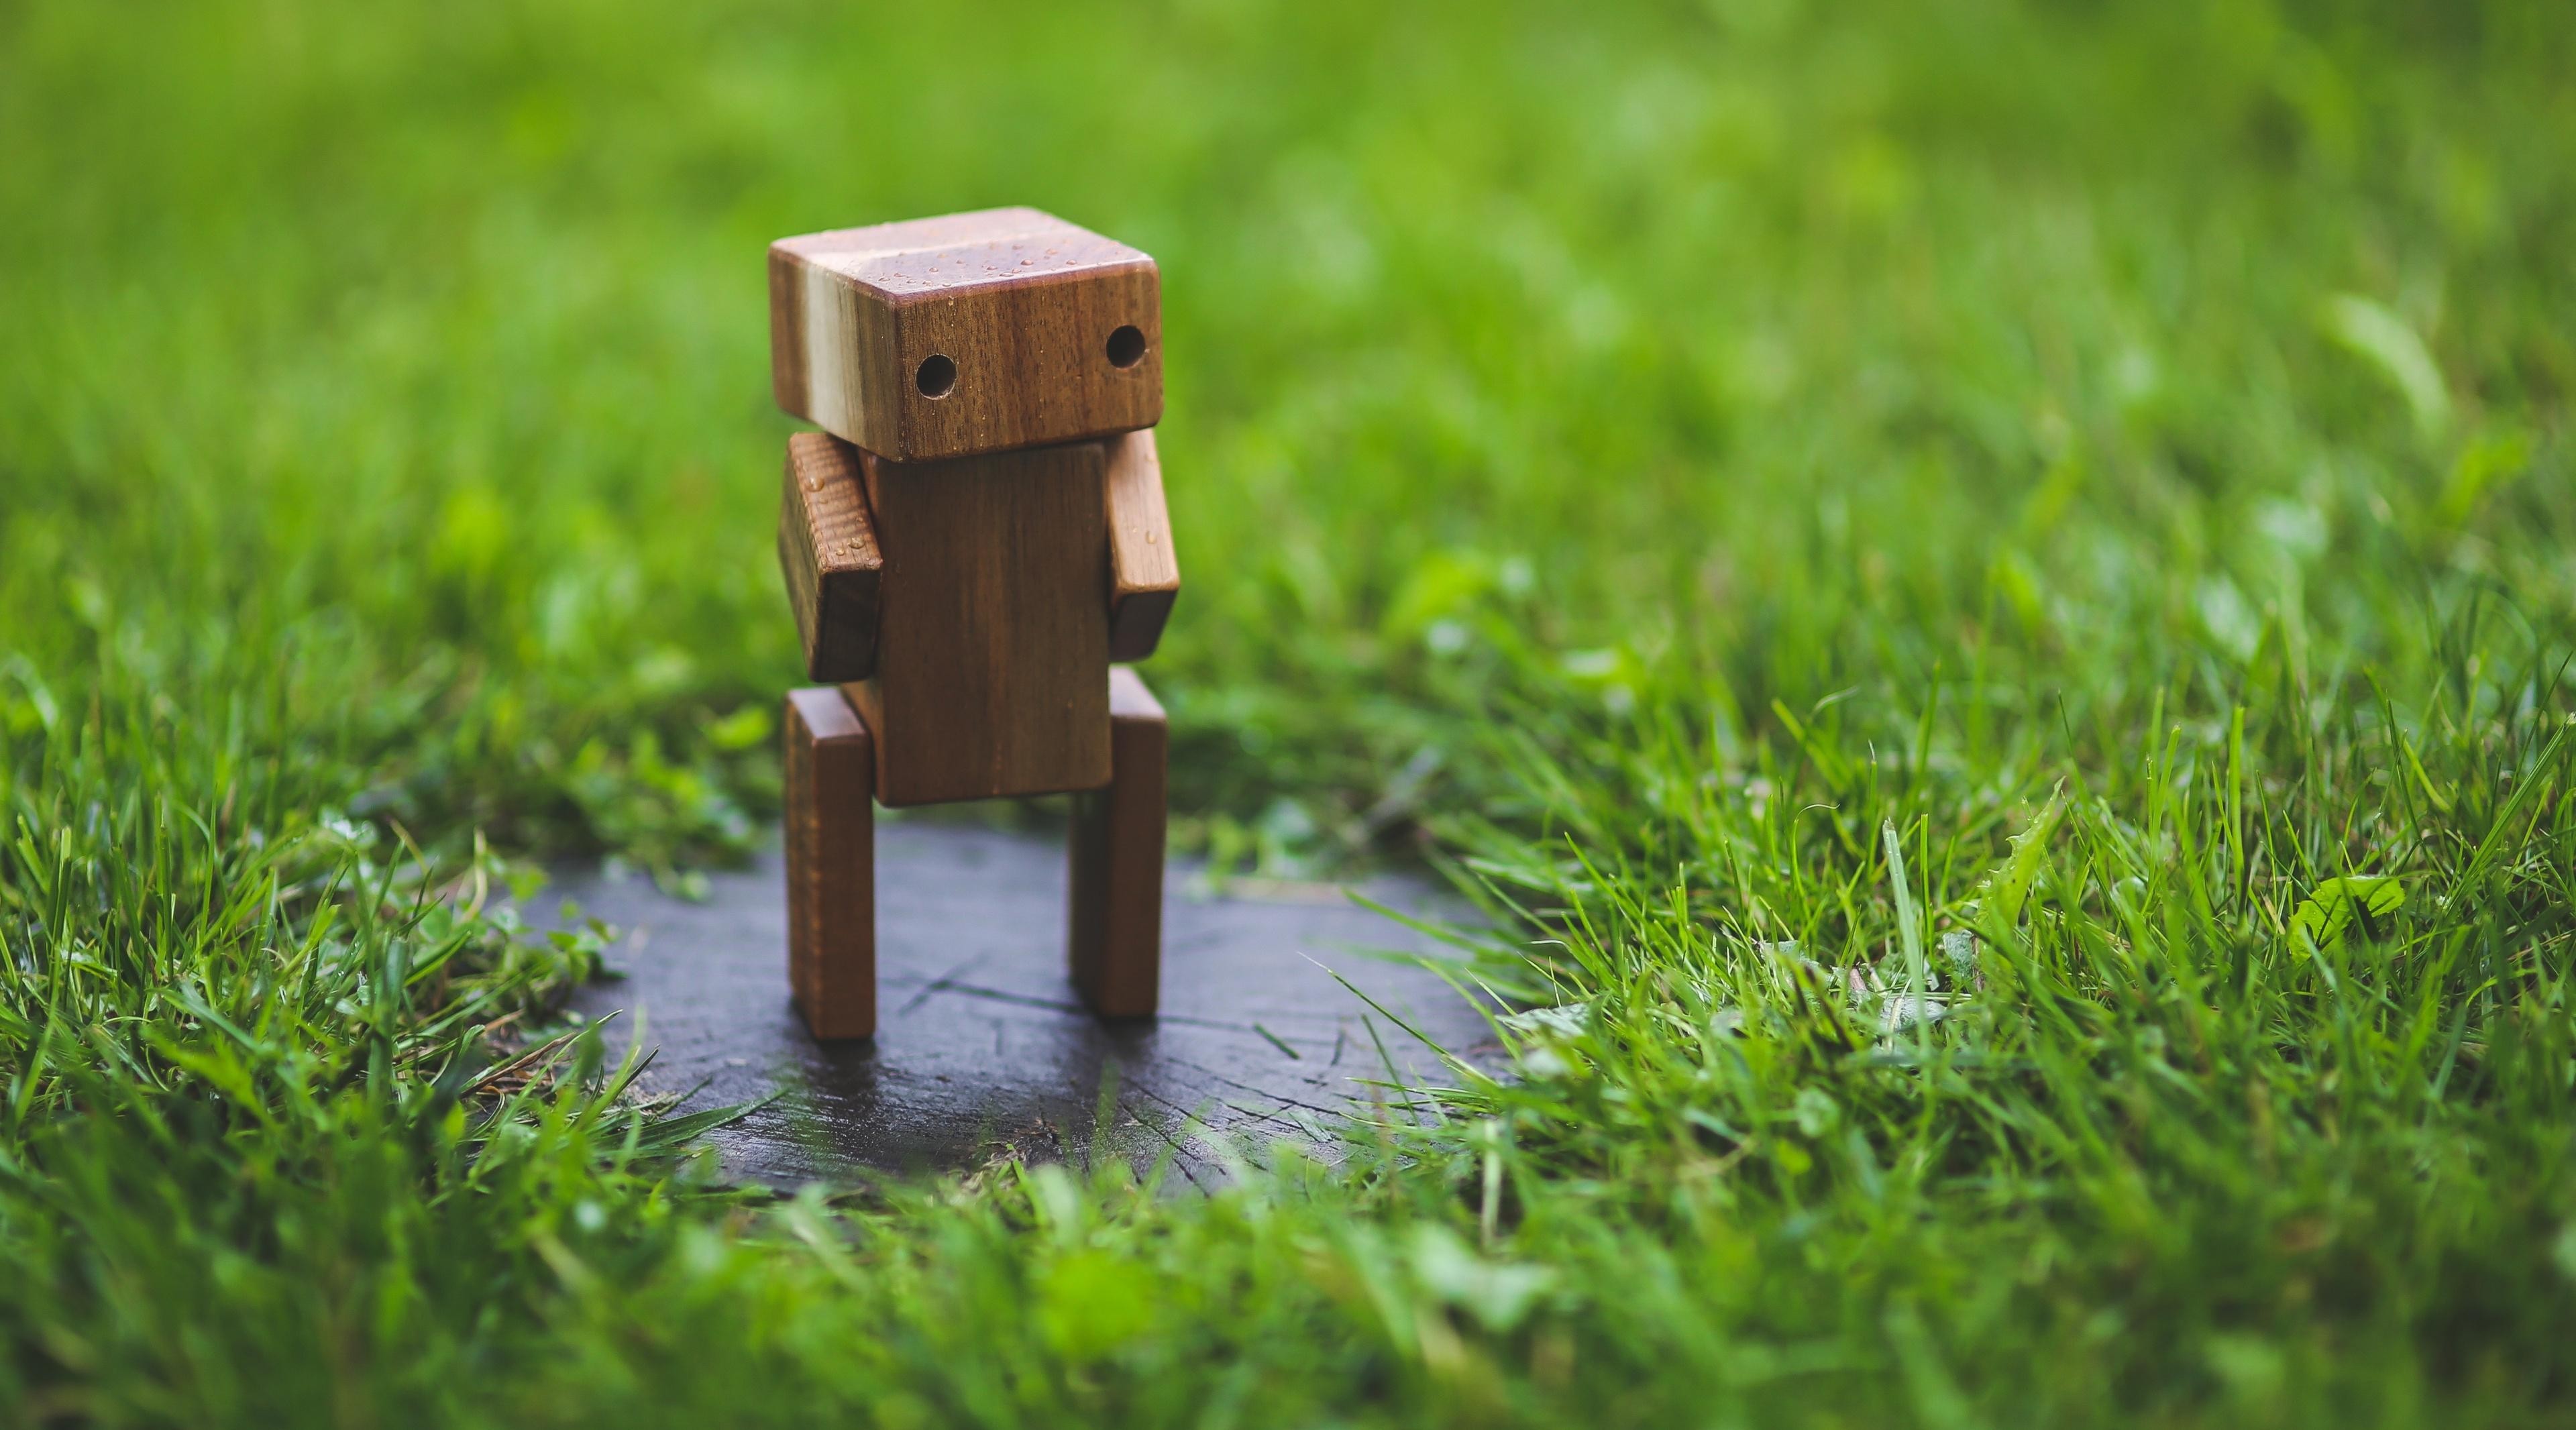 绿色草坪上矗立着一个木制小机器人